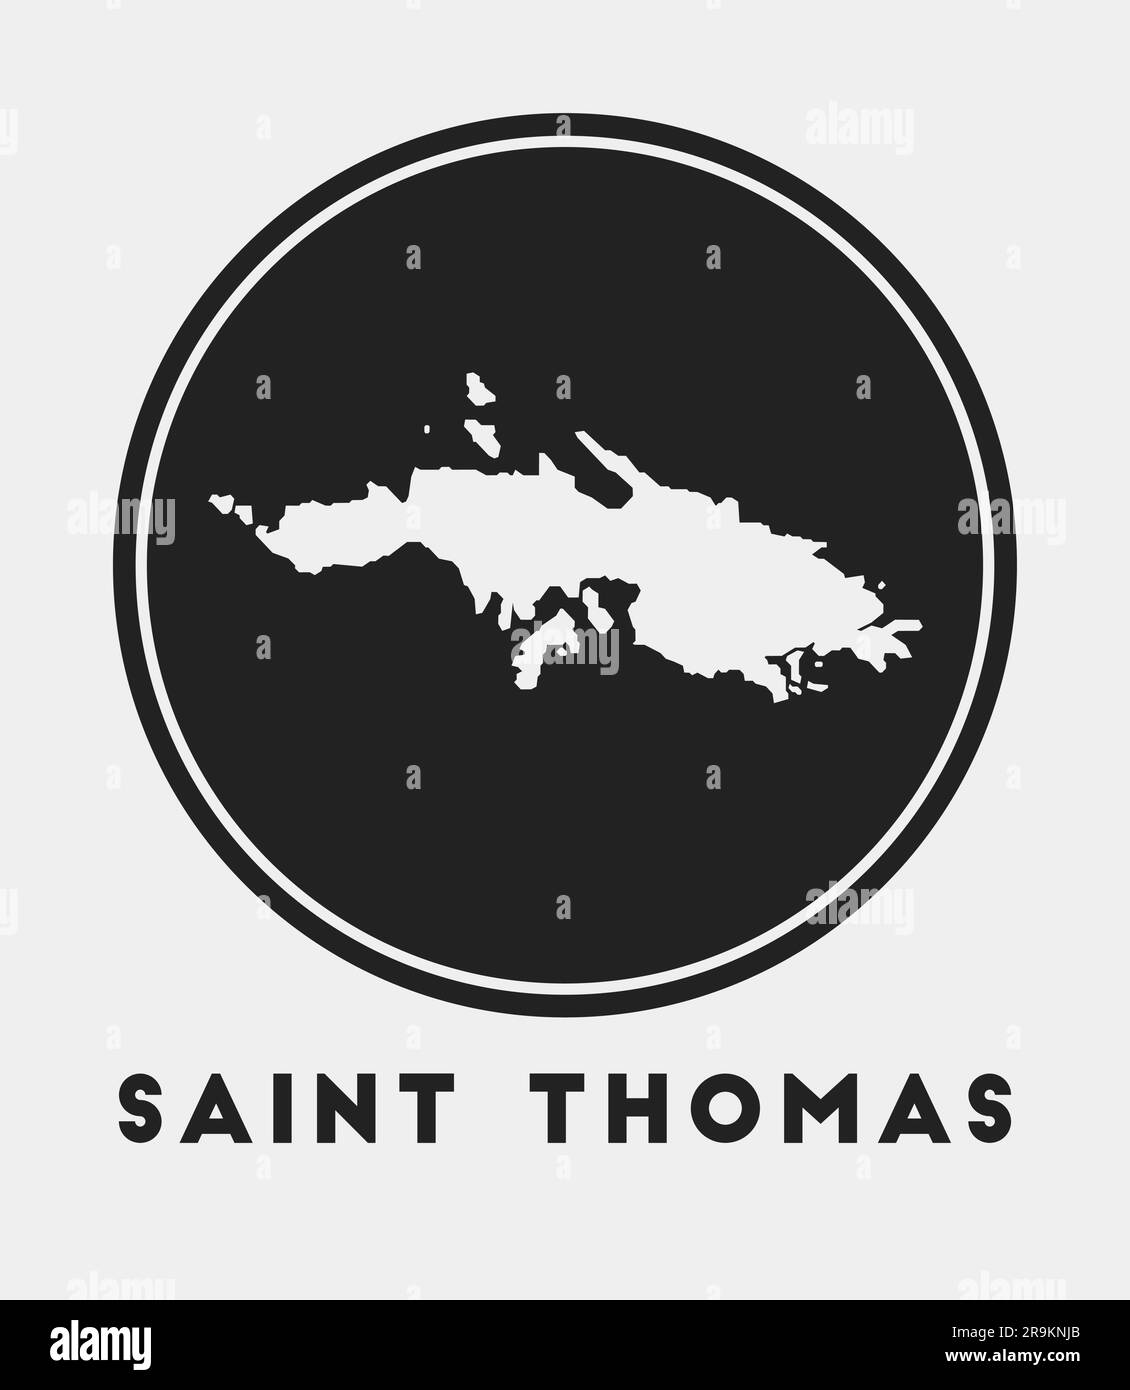 Saint Thomas icon. Round logo with island map and title. Stylish Saint ...